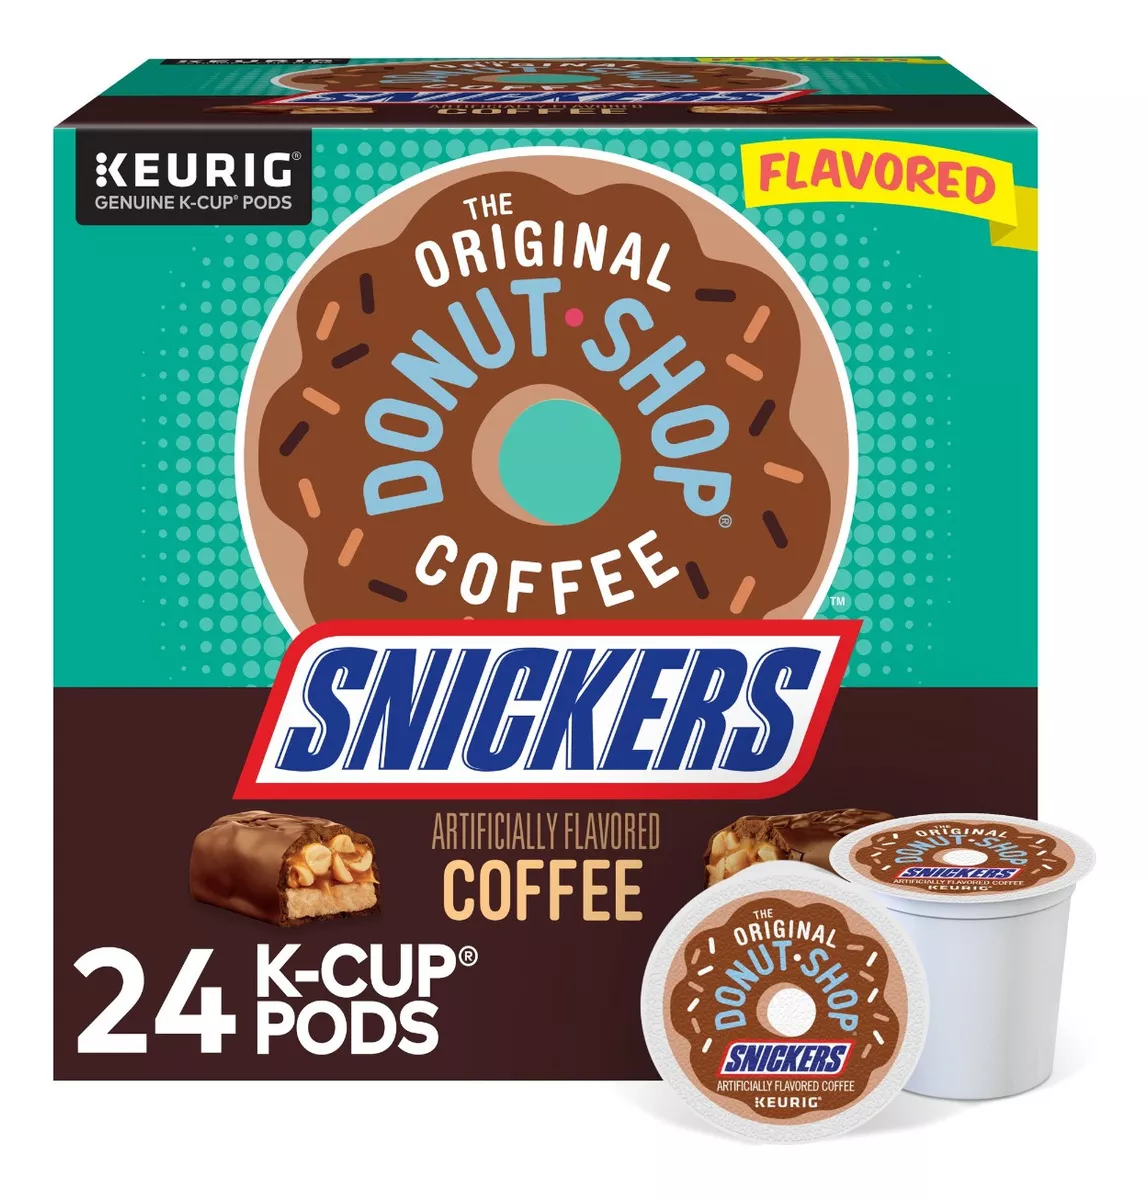 Primera imagen para búsqueda de snickers coffee